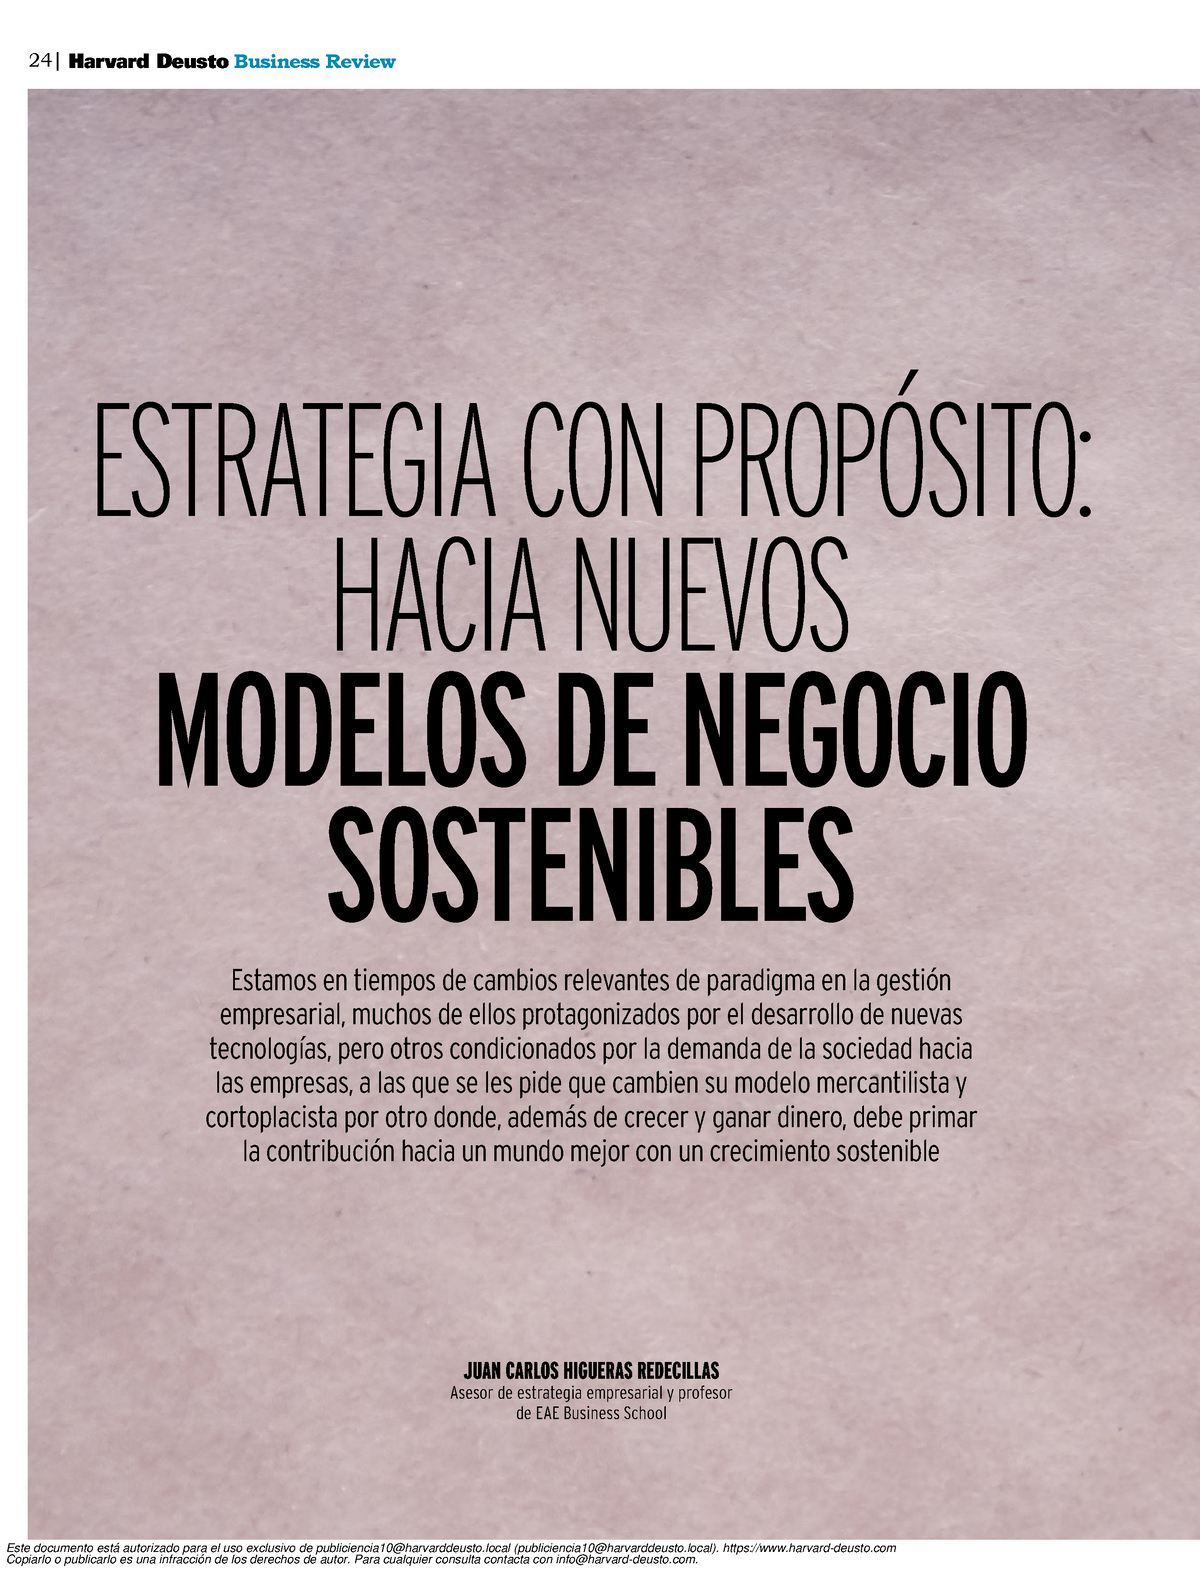 MR 1 Estrategia con propósito, Hacia nuevos modelos de negocio sostenibles  - 24|Harvard Deusto - Studocu